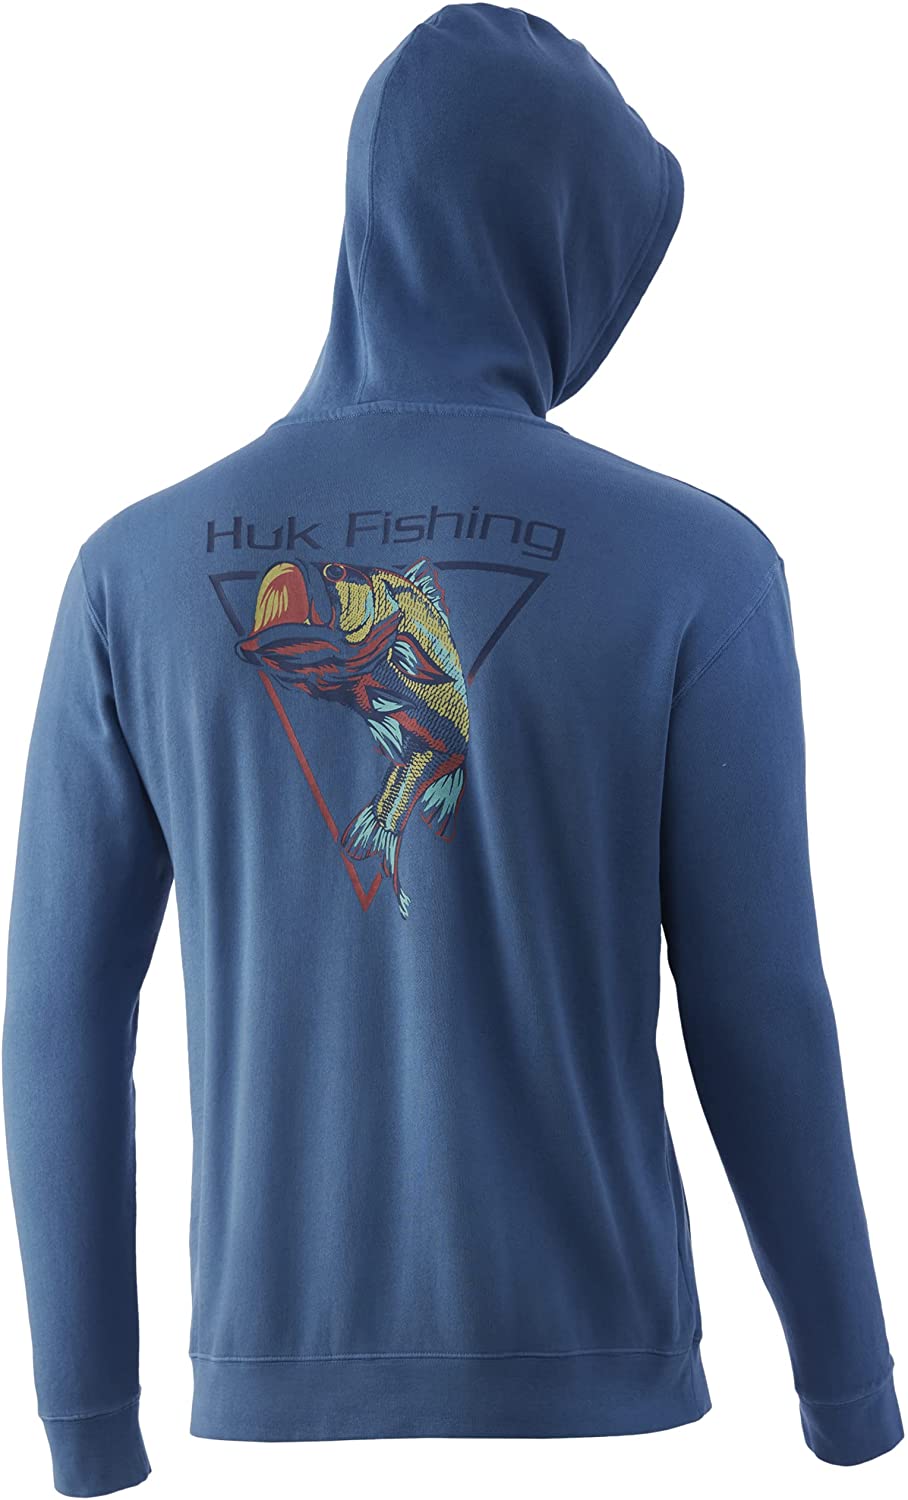 HUK Men's Performance Fleece Fishing Hoodie